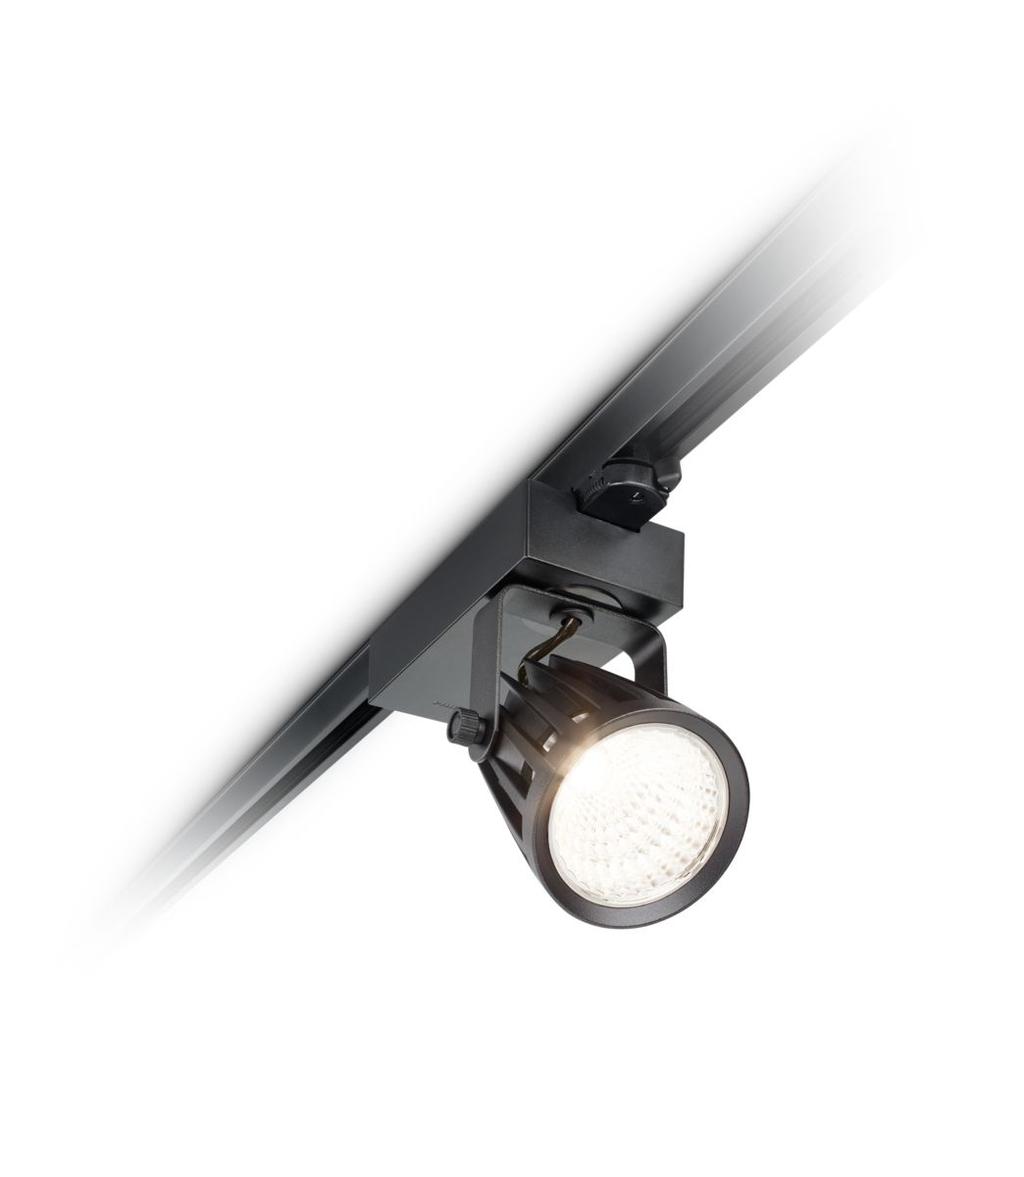 Binnenverlichting» Spots» EcoStyle ST440T EcoStyle ST440T Winkeliers zoeken een betaalbare LEDaccentverlichtingsoplossing met een redelijke terugverdientijd in vergelijking met conventionele